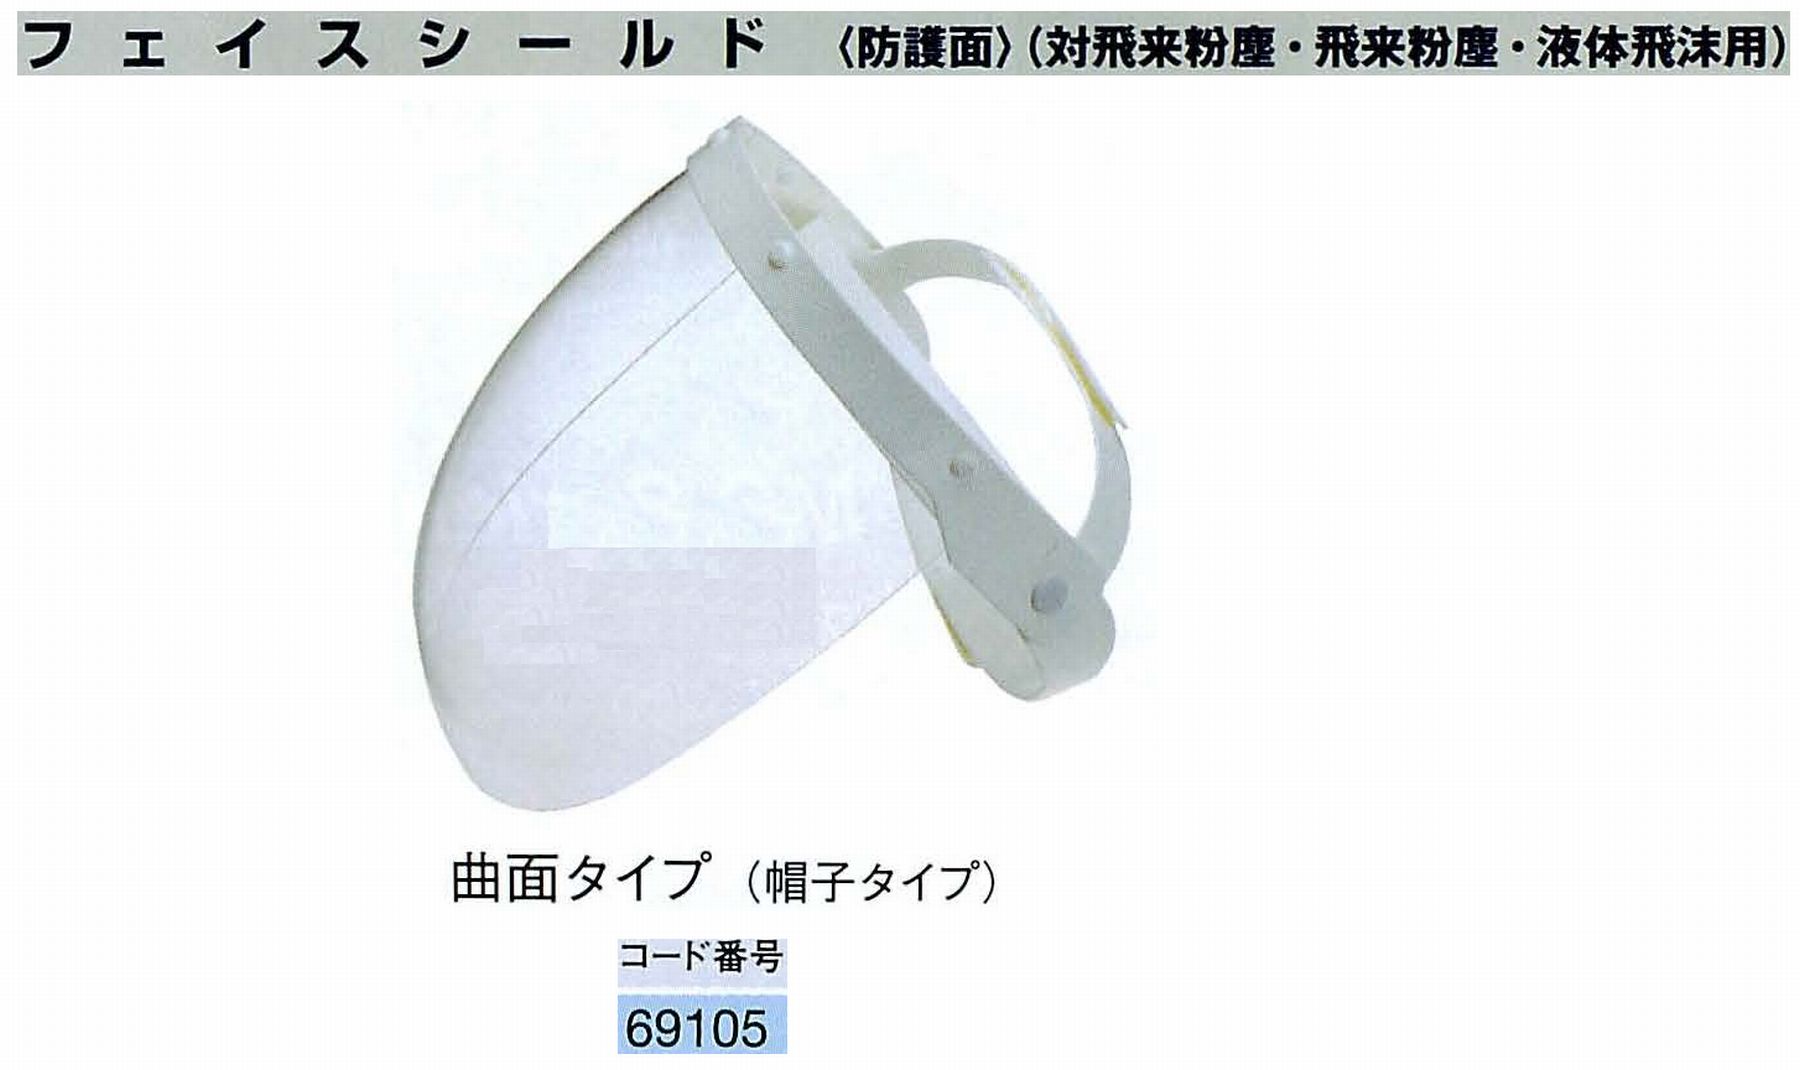 ナカニシ/NAKANISHI 防護用品 フェイスシールド 曲面タイプ(帽子タイプ) 69105